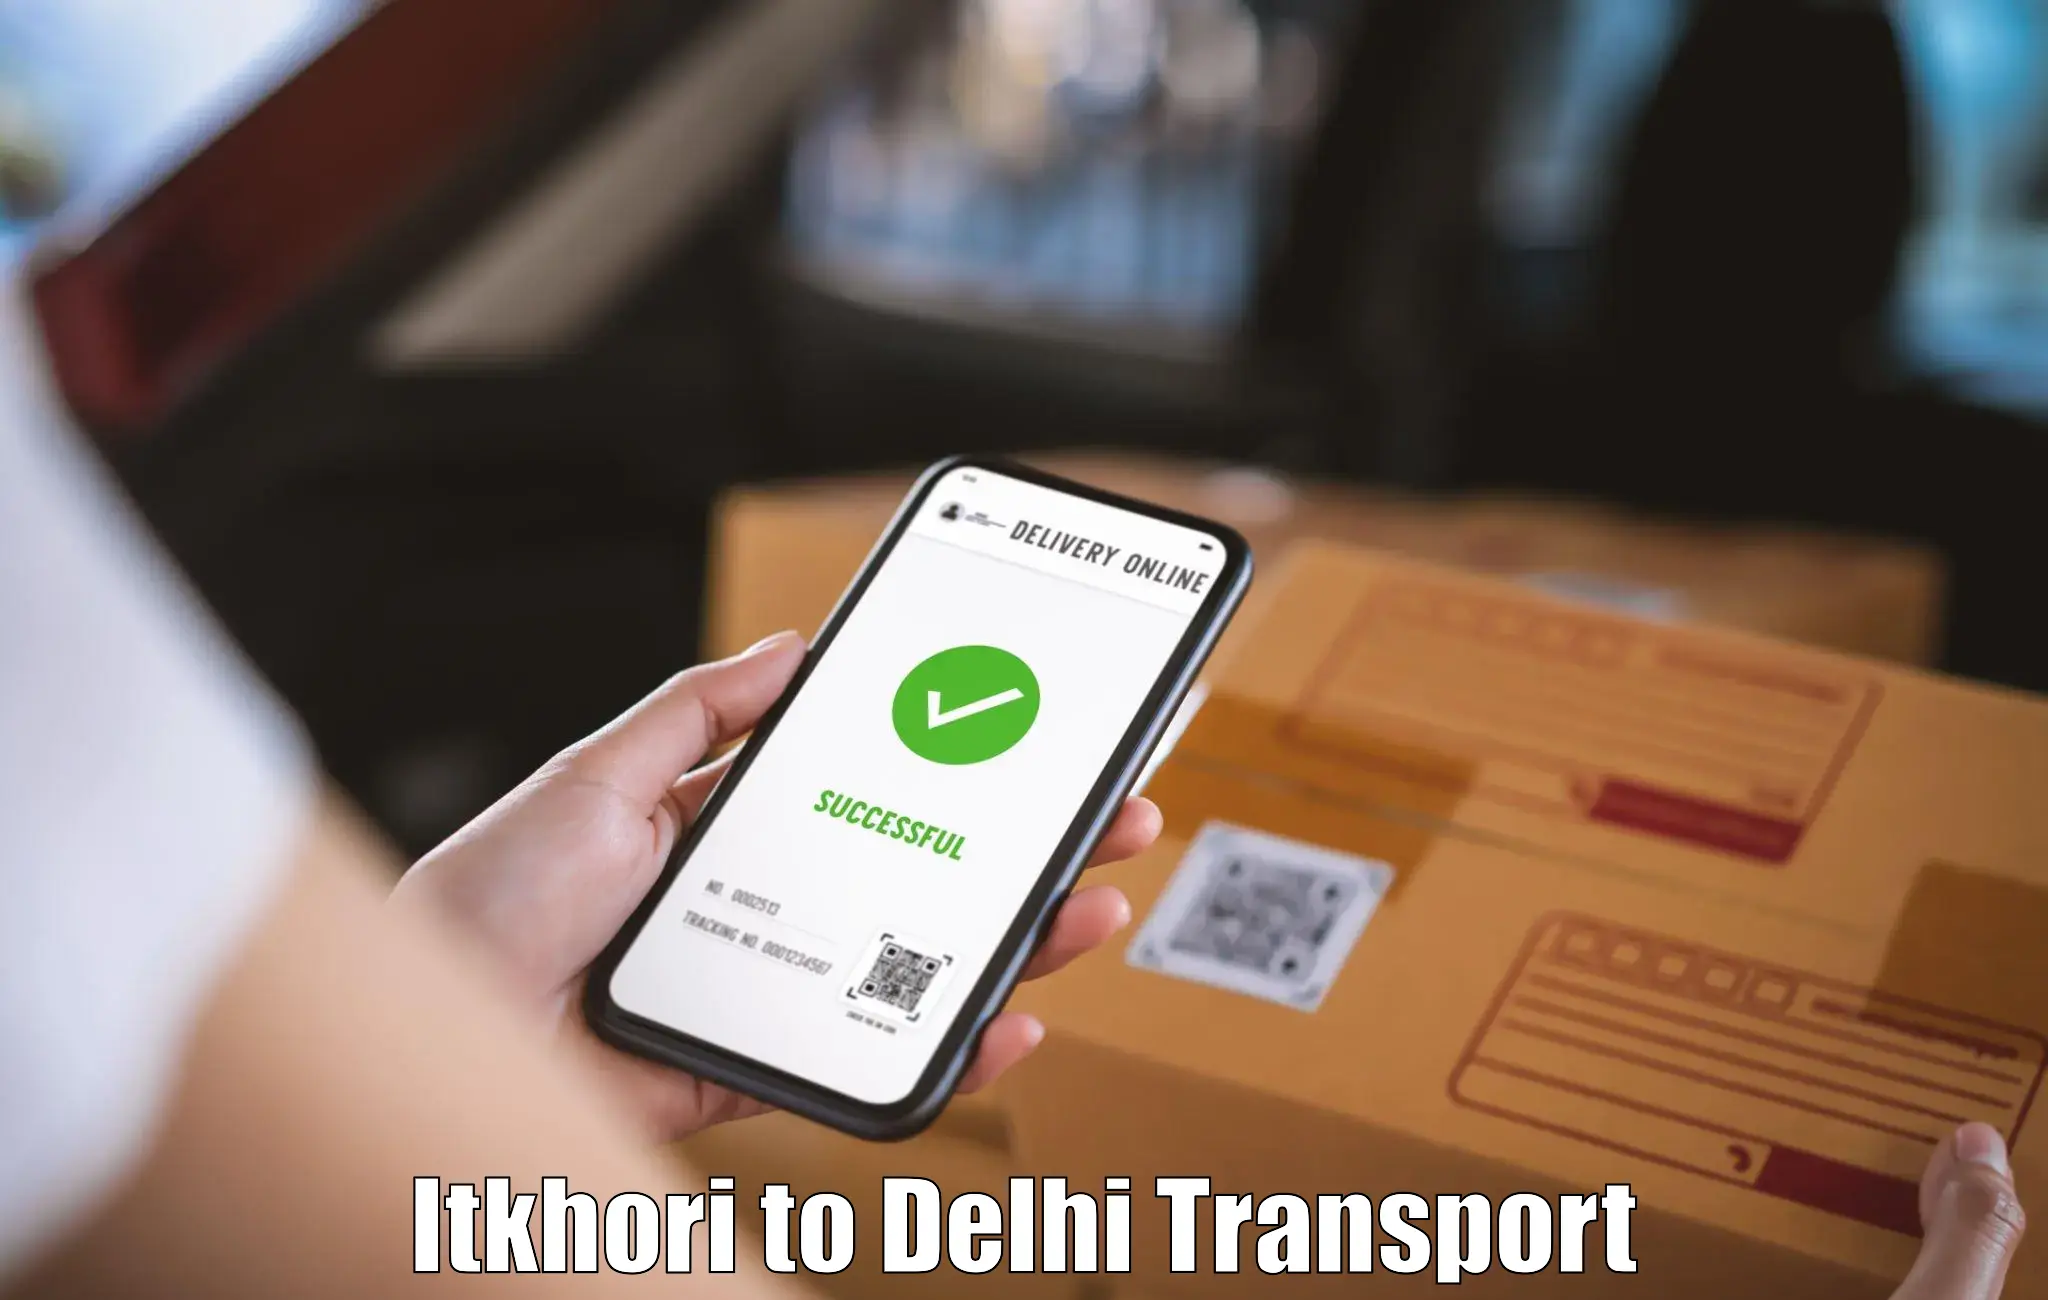 Transport services Itkhori to Jamia Millia Islamia New Delhi